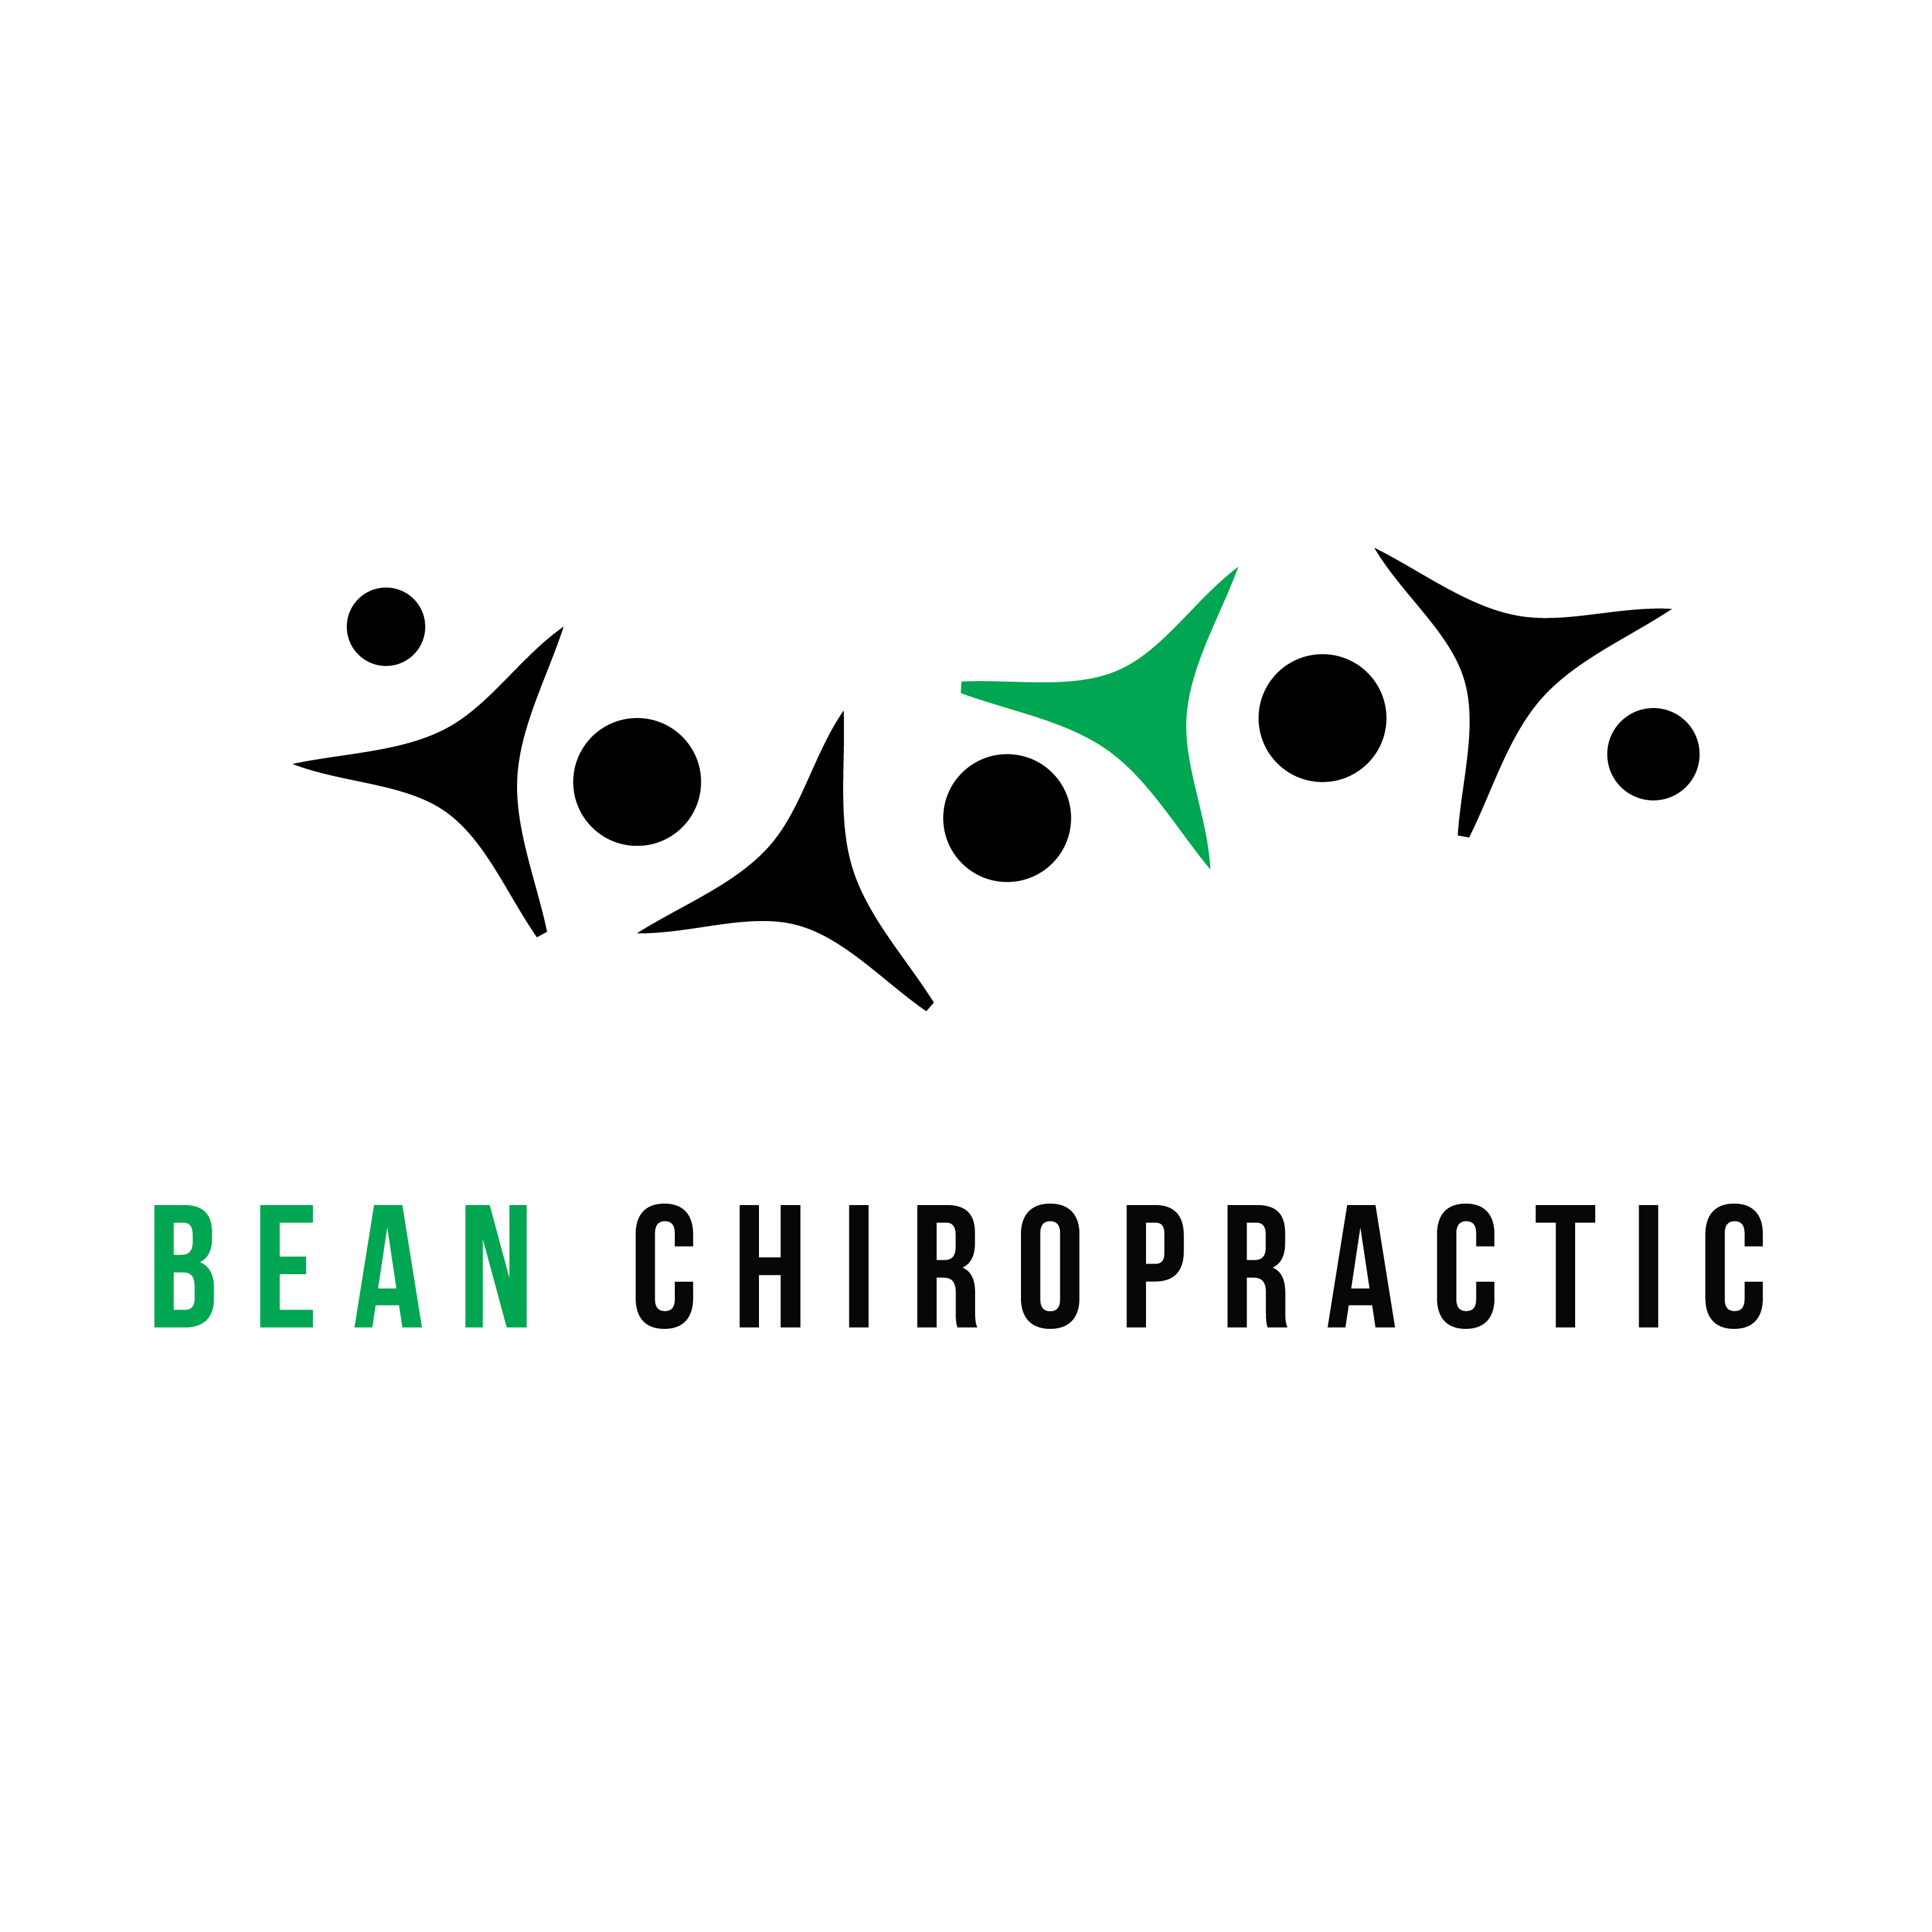 Bean Chiropractic